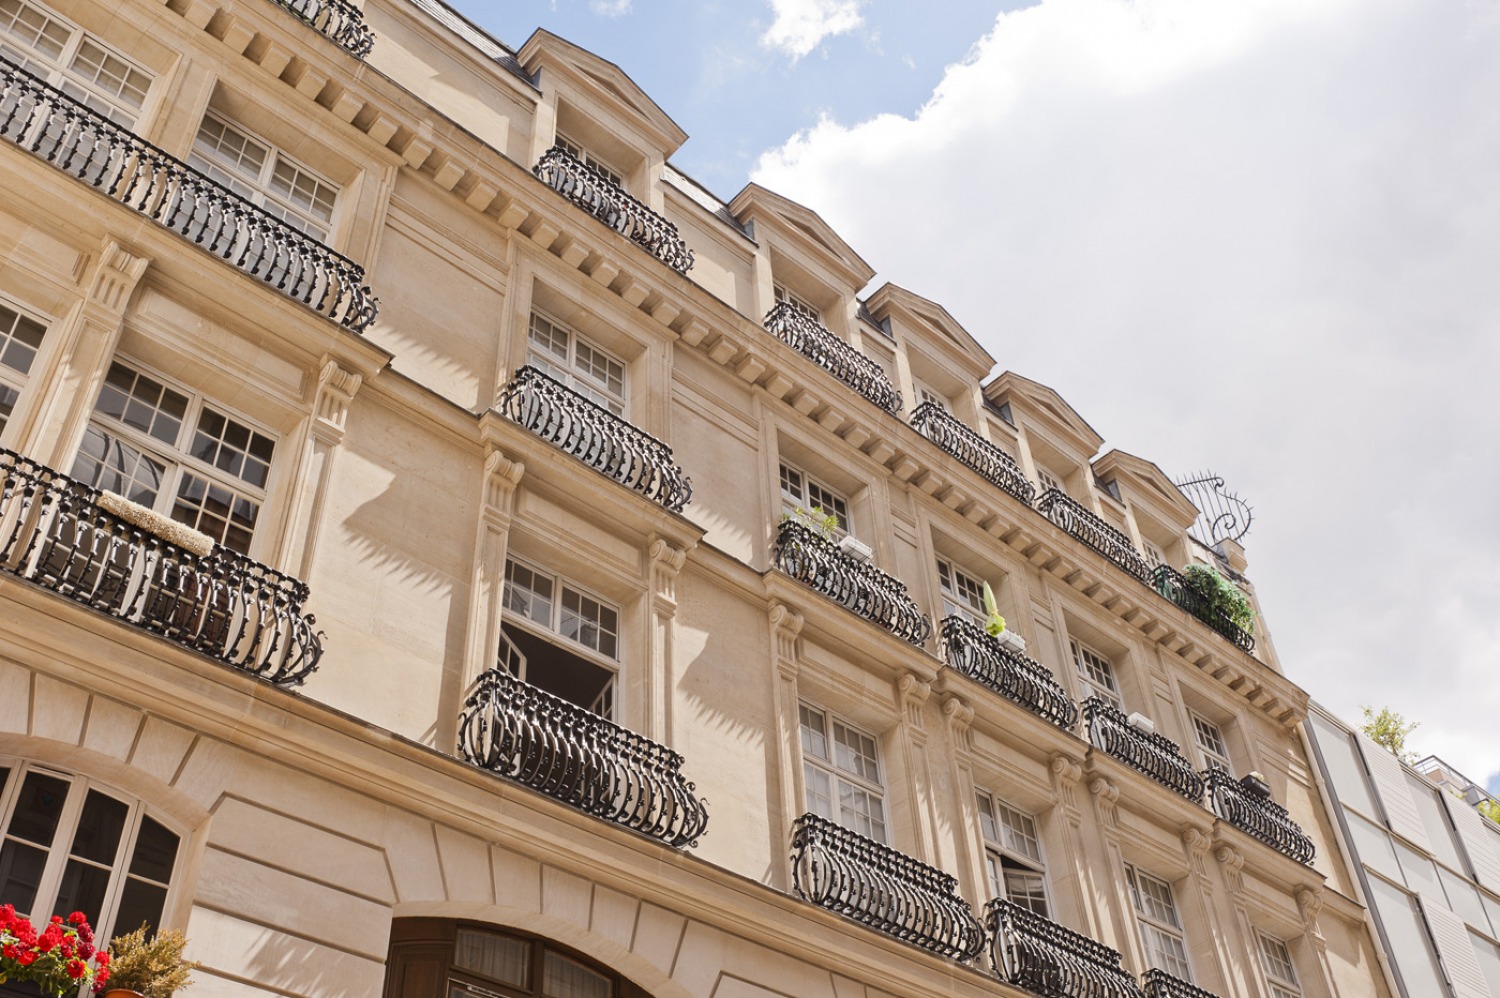 Architecture - Appartements - Immeuble. Marais, Paris III